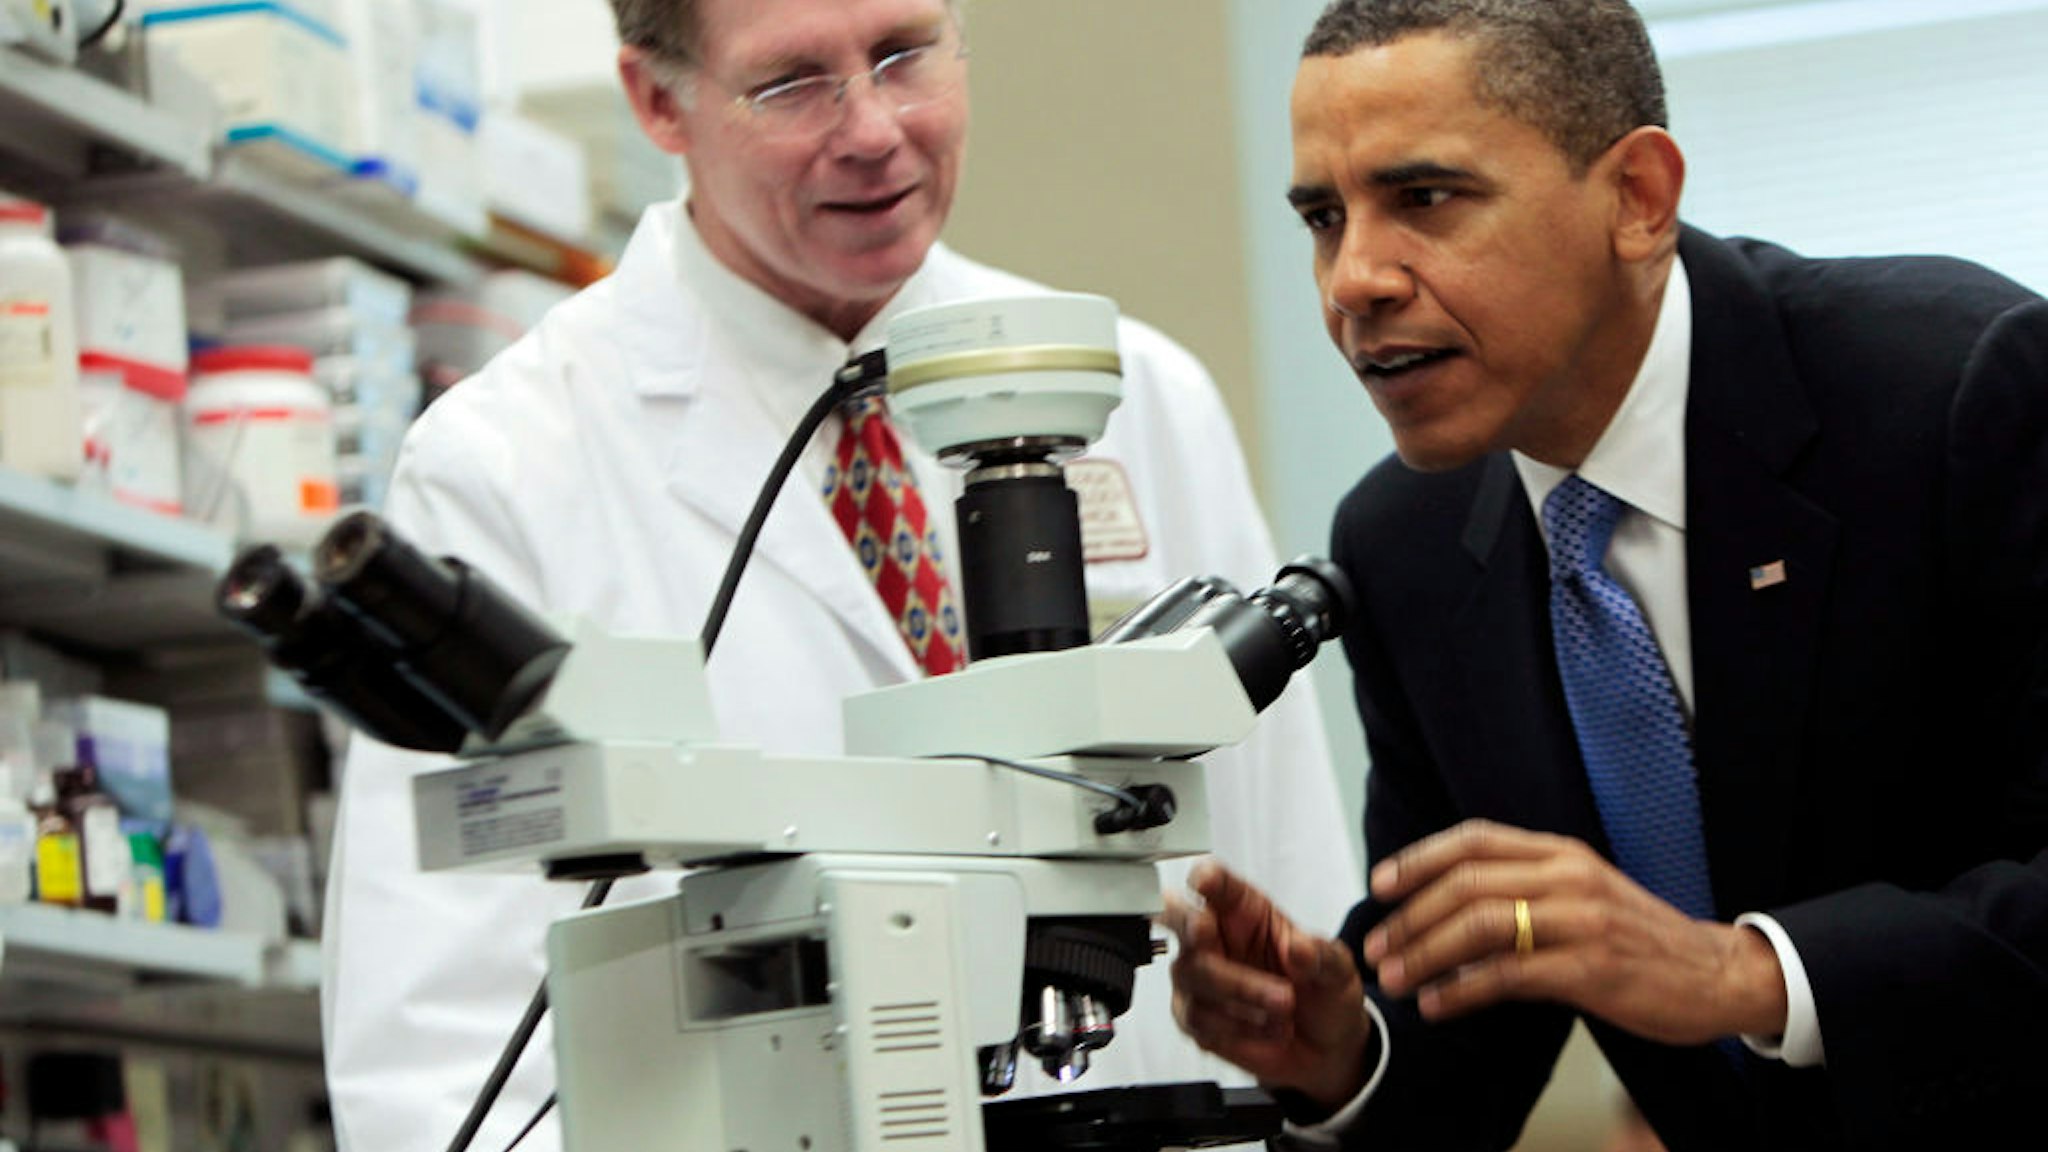 Obama Microscope